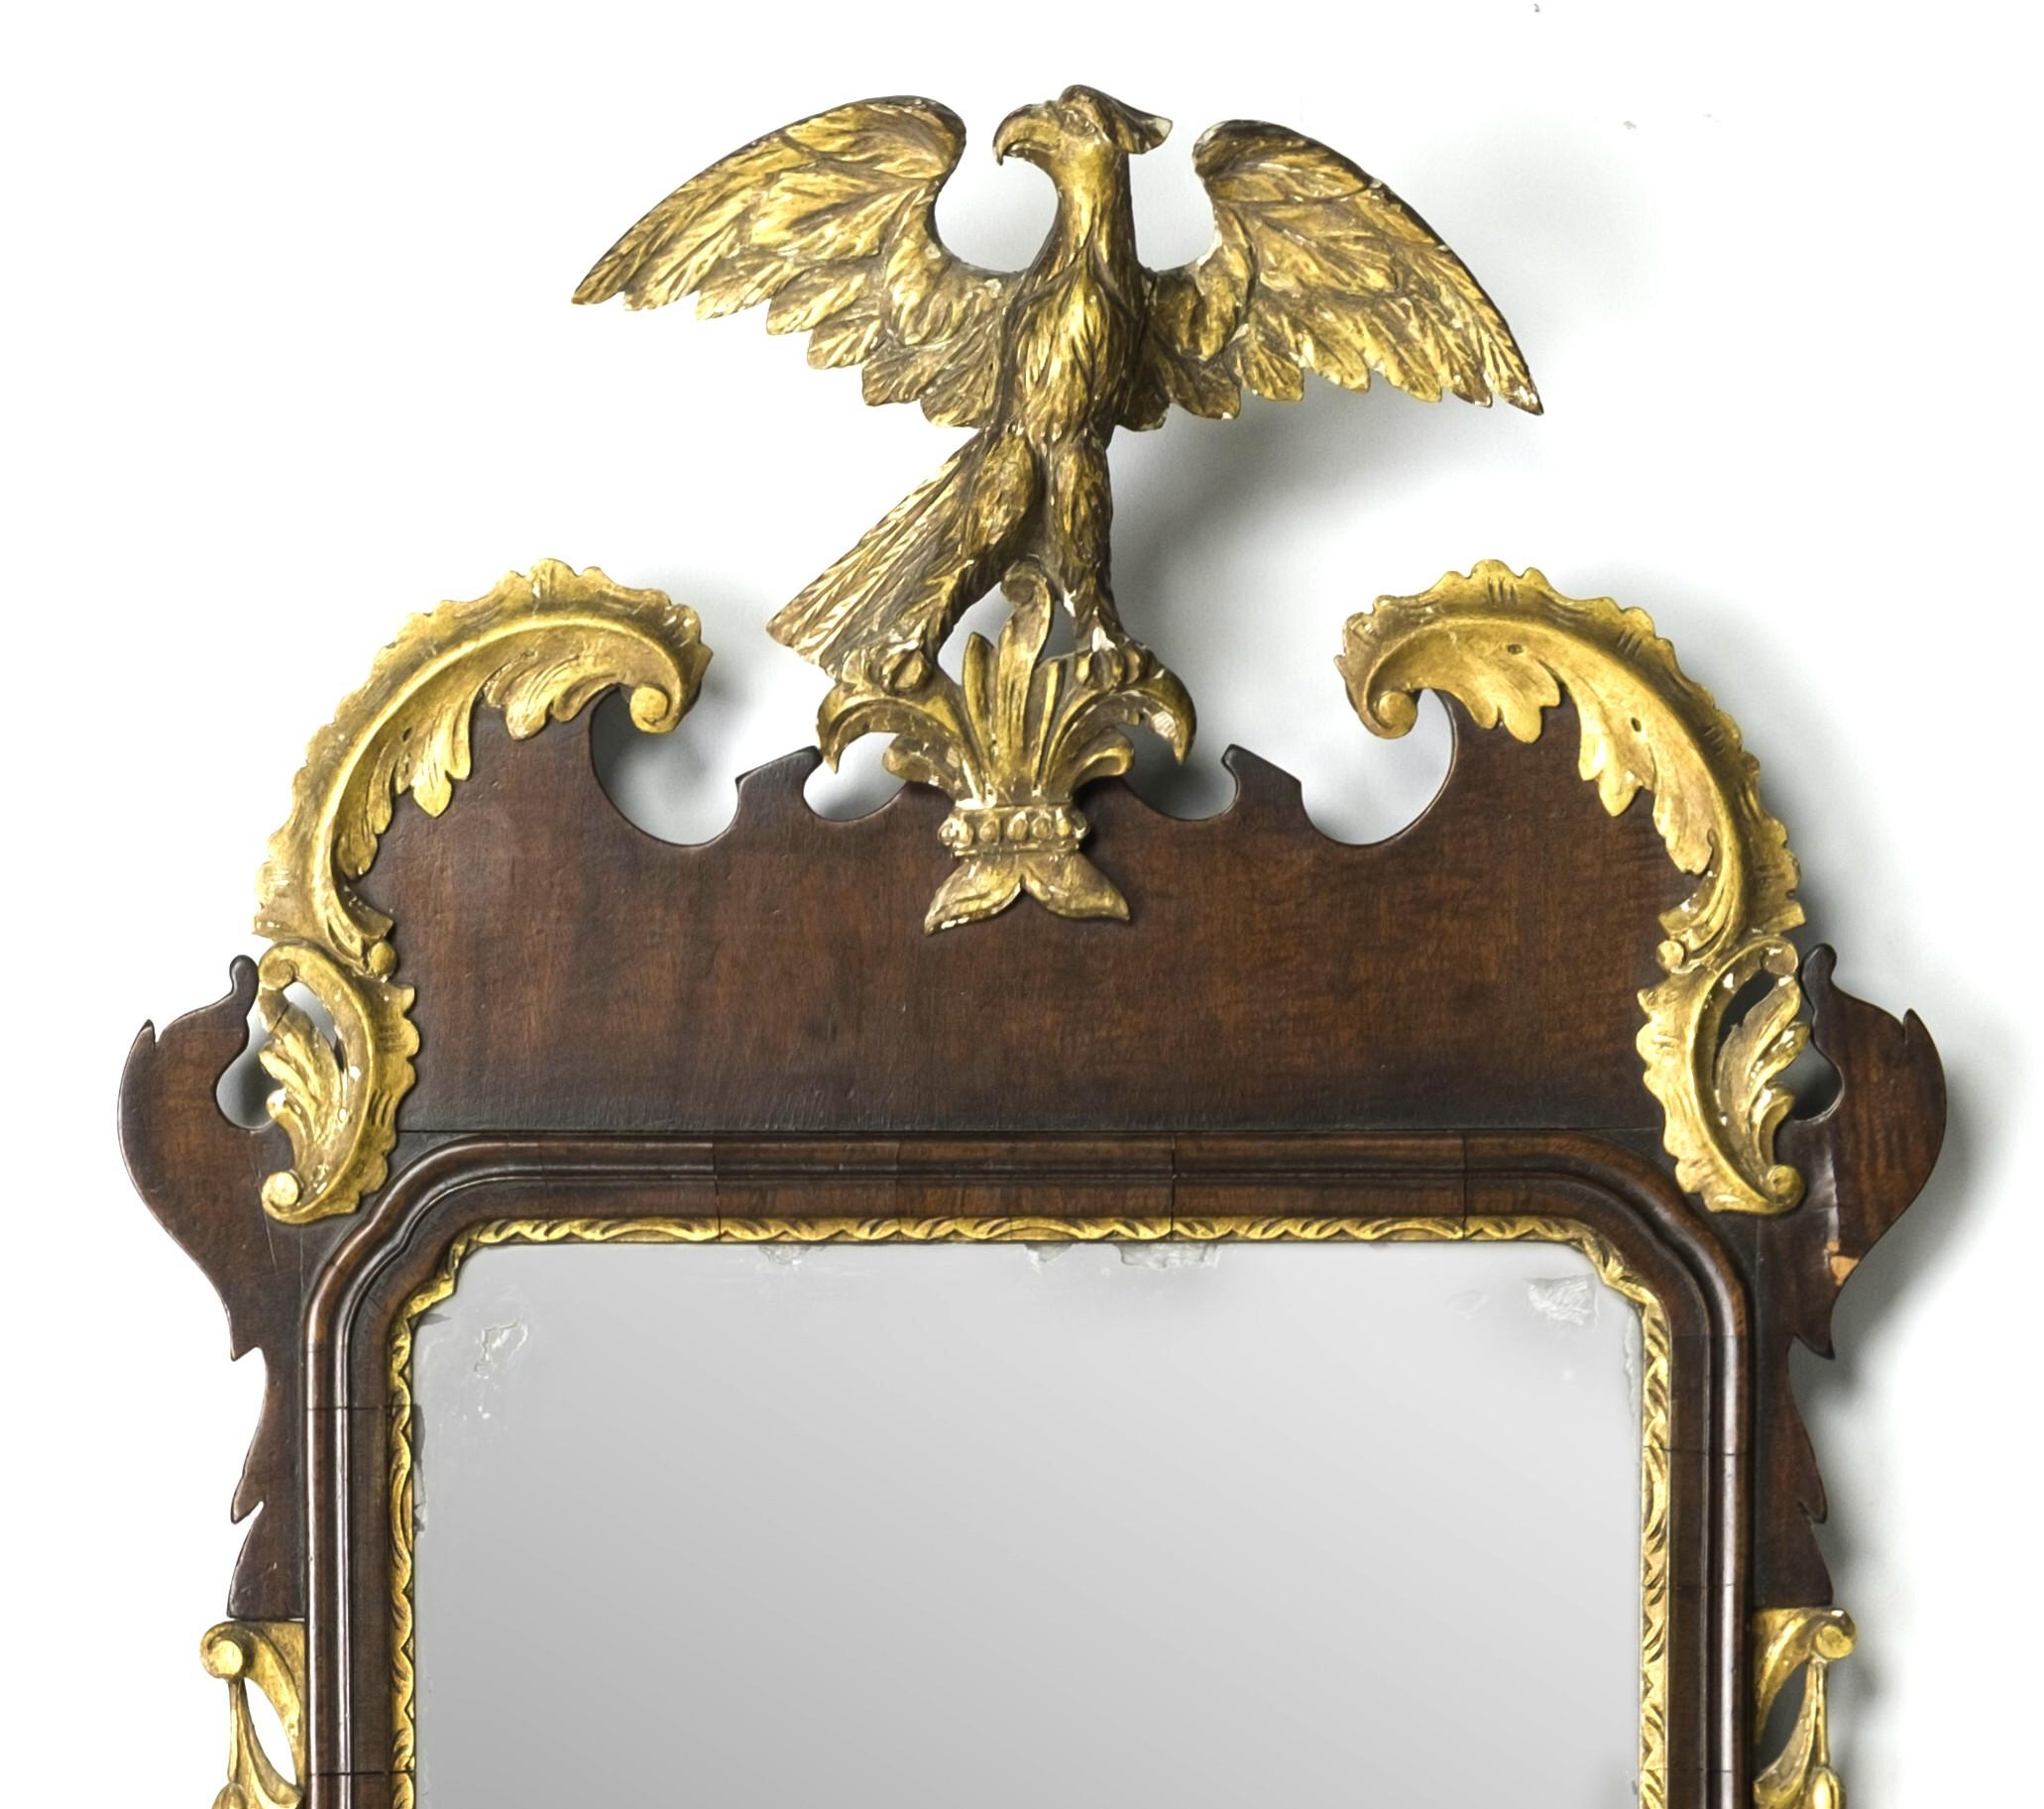 Un très beau miroir de style Chippendale, de la Constitution du centenaire, présentant une plaque rectangulaire ancienne, sinon originale, enchâssée dans des moulures en acajou massif sur un cadre en placage d'acajou, le fronton présentant un